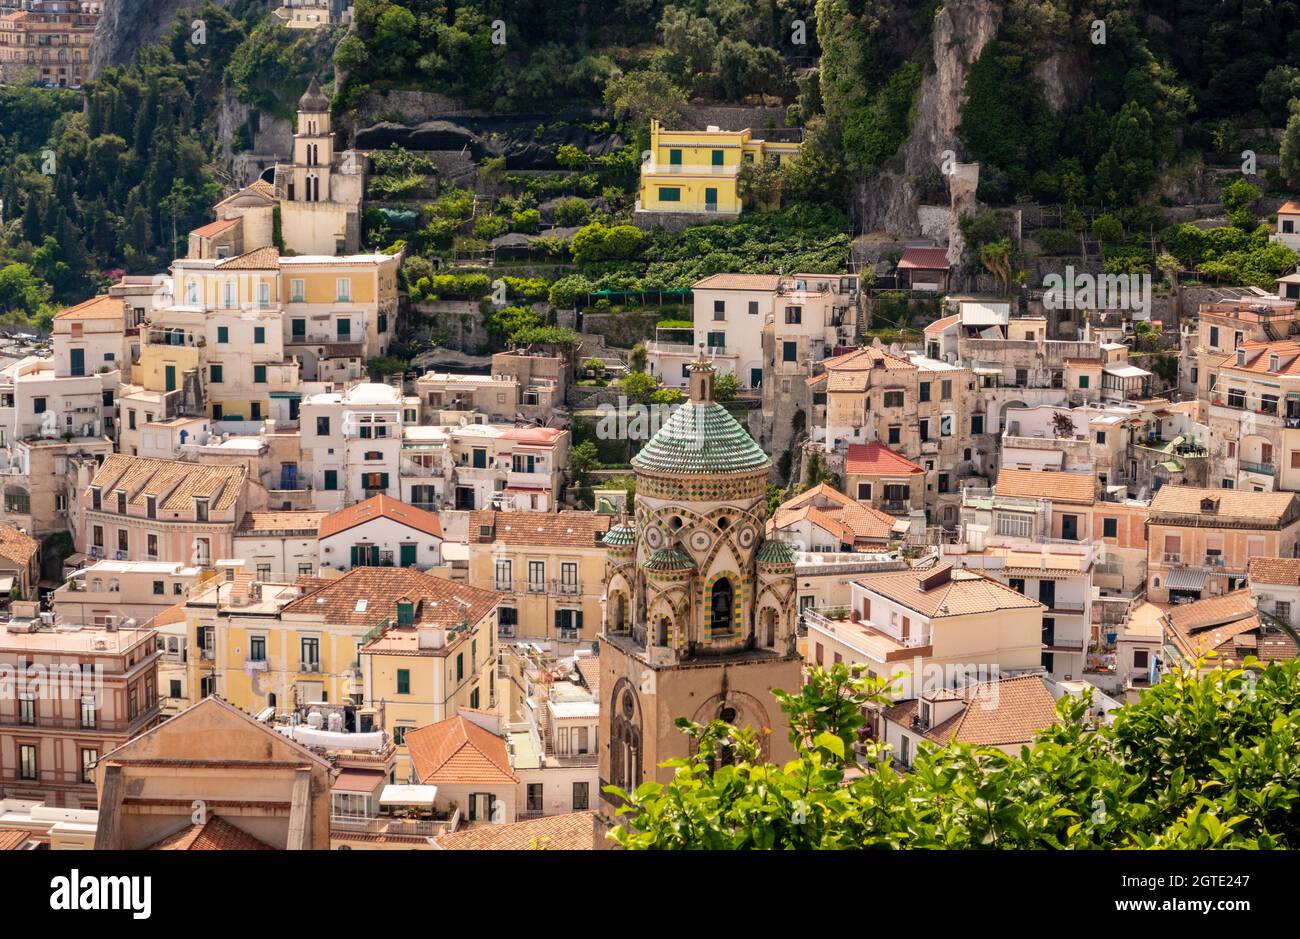 La città di Amalfi in Costiera Amalfitana, Salerno, Campania, Italia Foto Stock